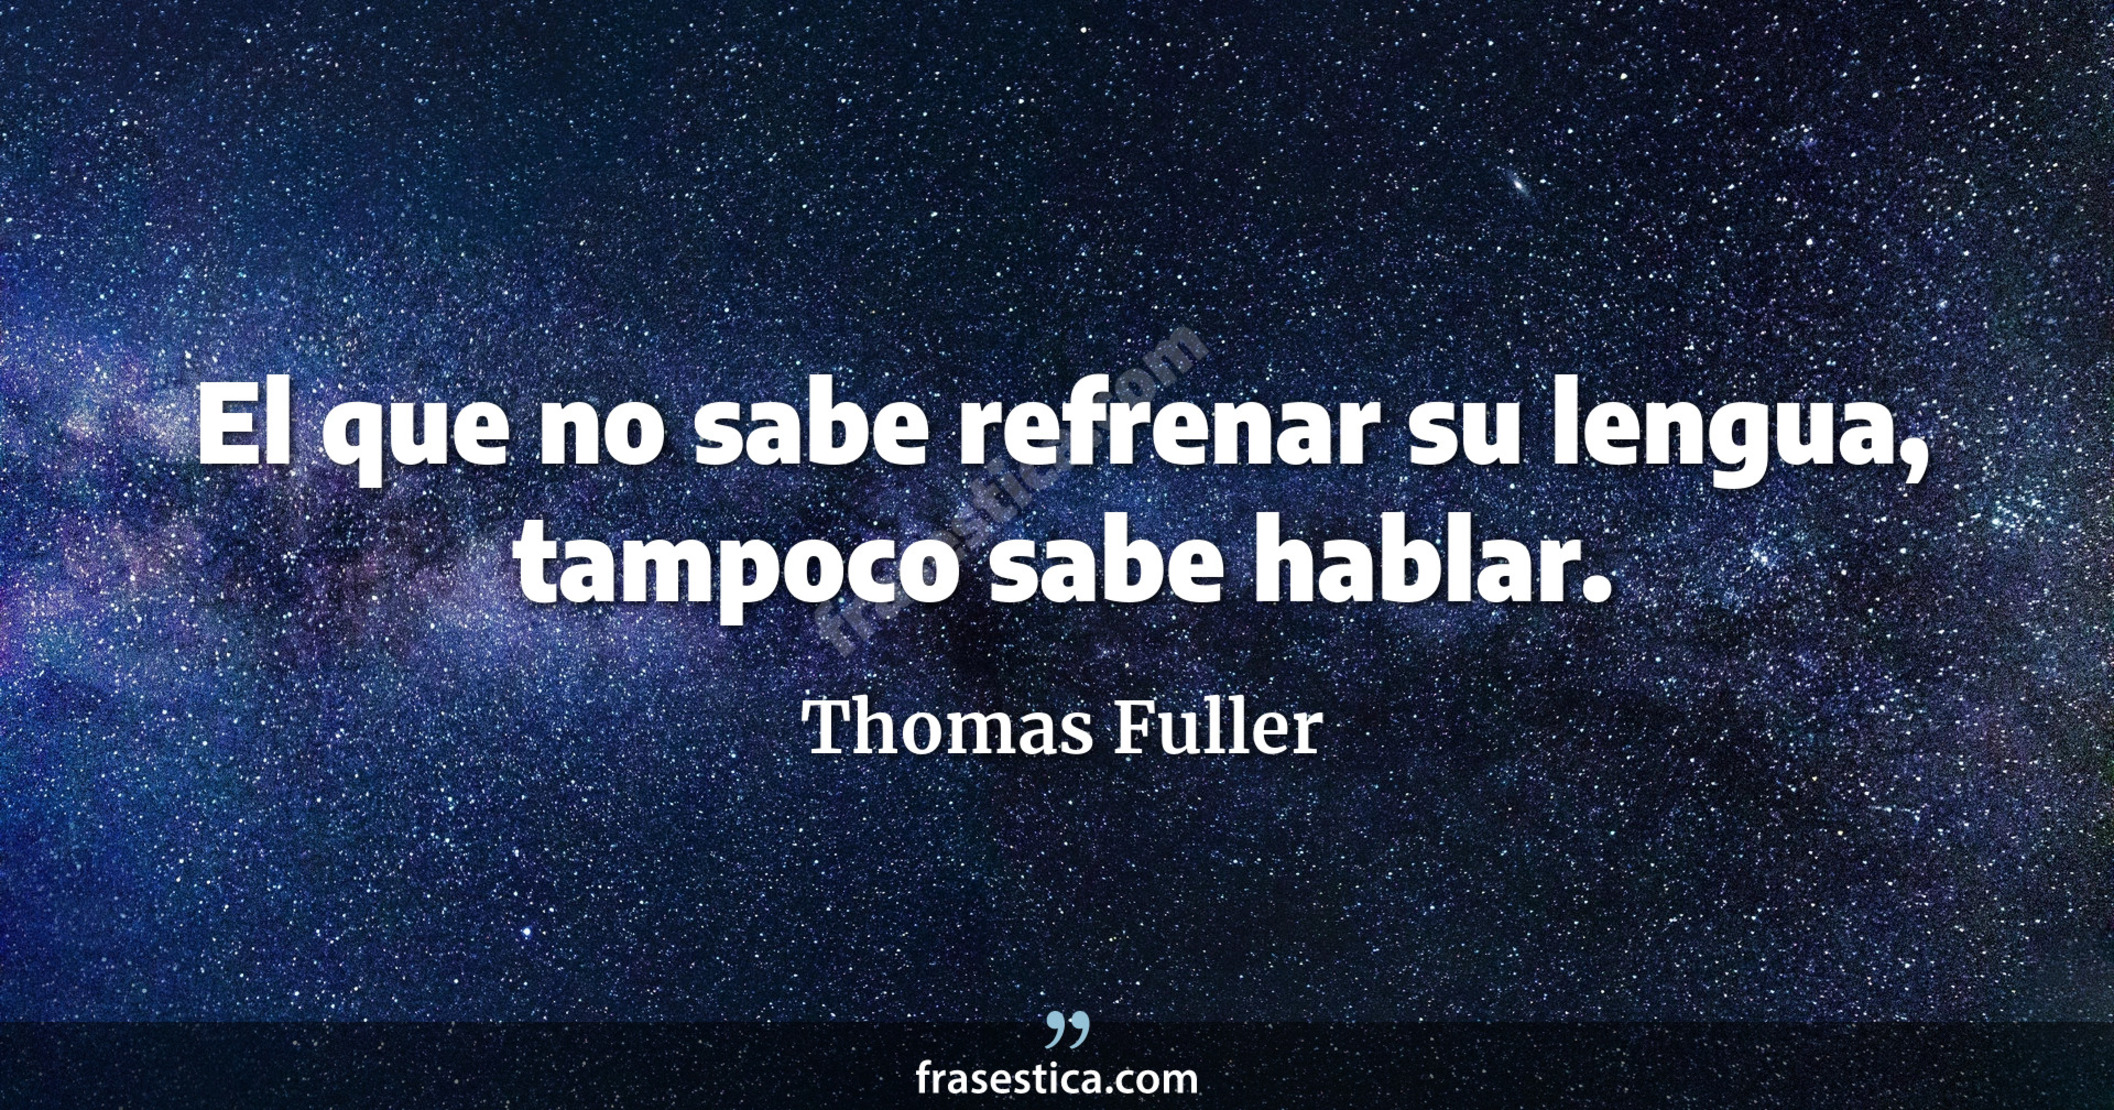 El que no sabe refrenar su lengua, tampoco sabe hablar. - Thomas Fuller